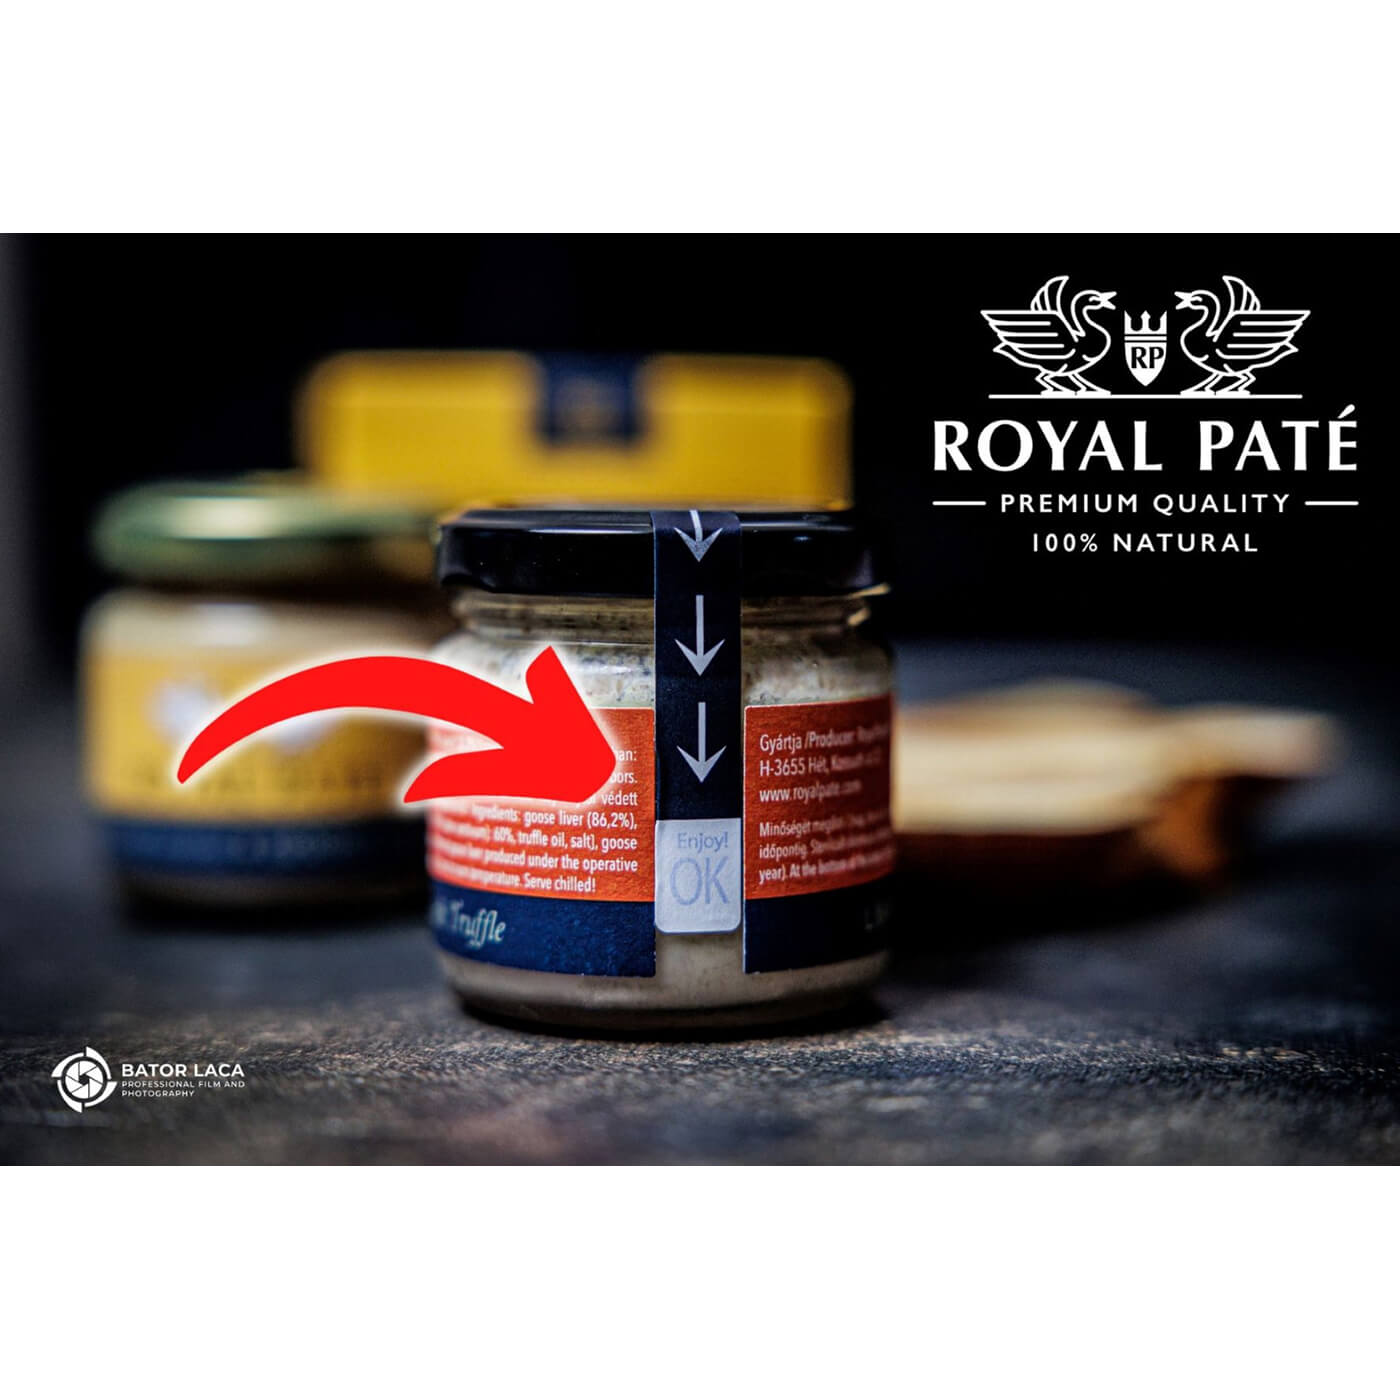 Bloc de foie gras cu vin de Tokaj 86% Royal Pate 70g